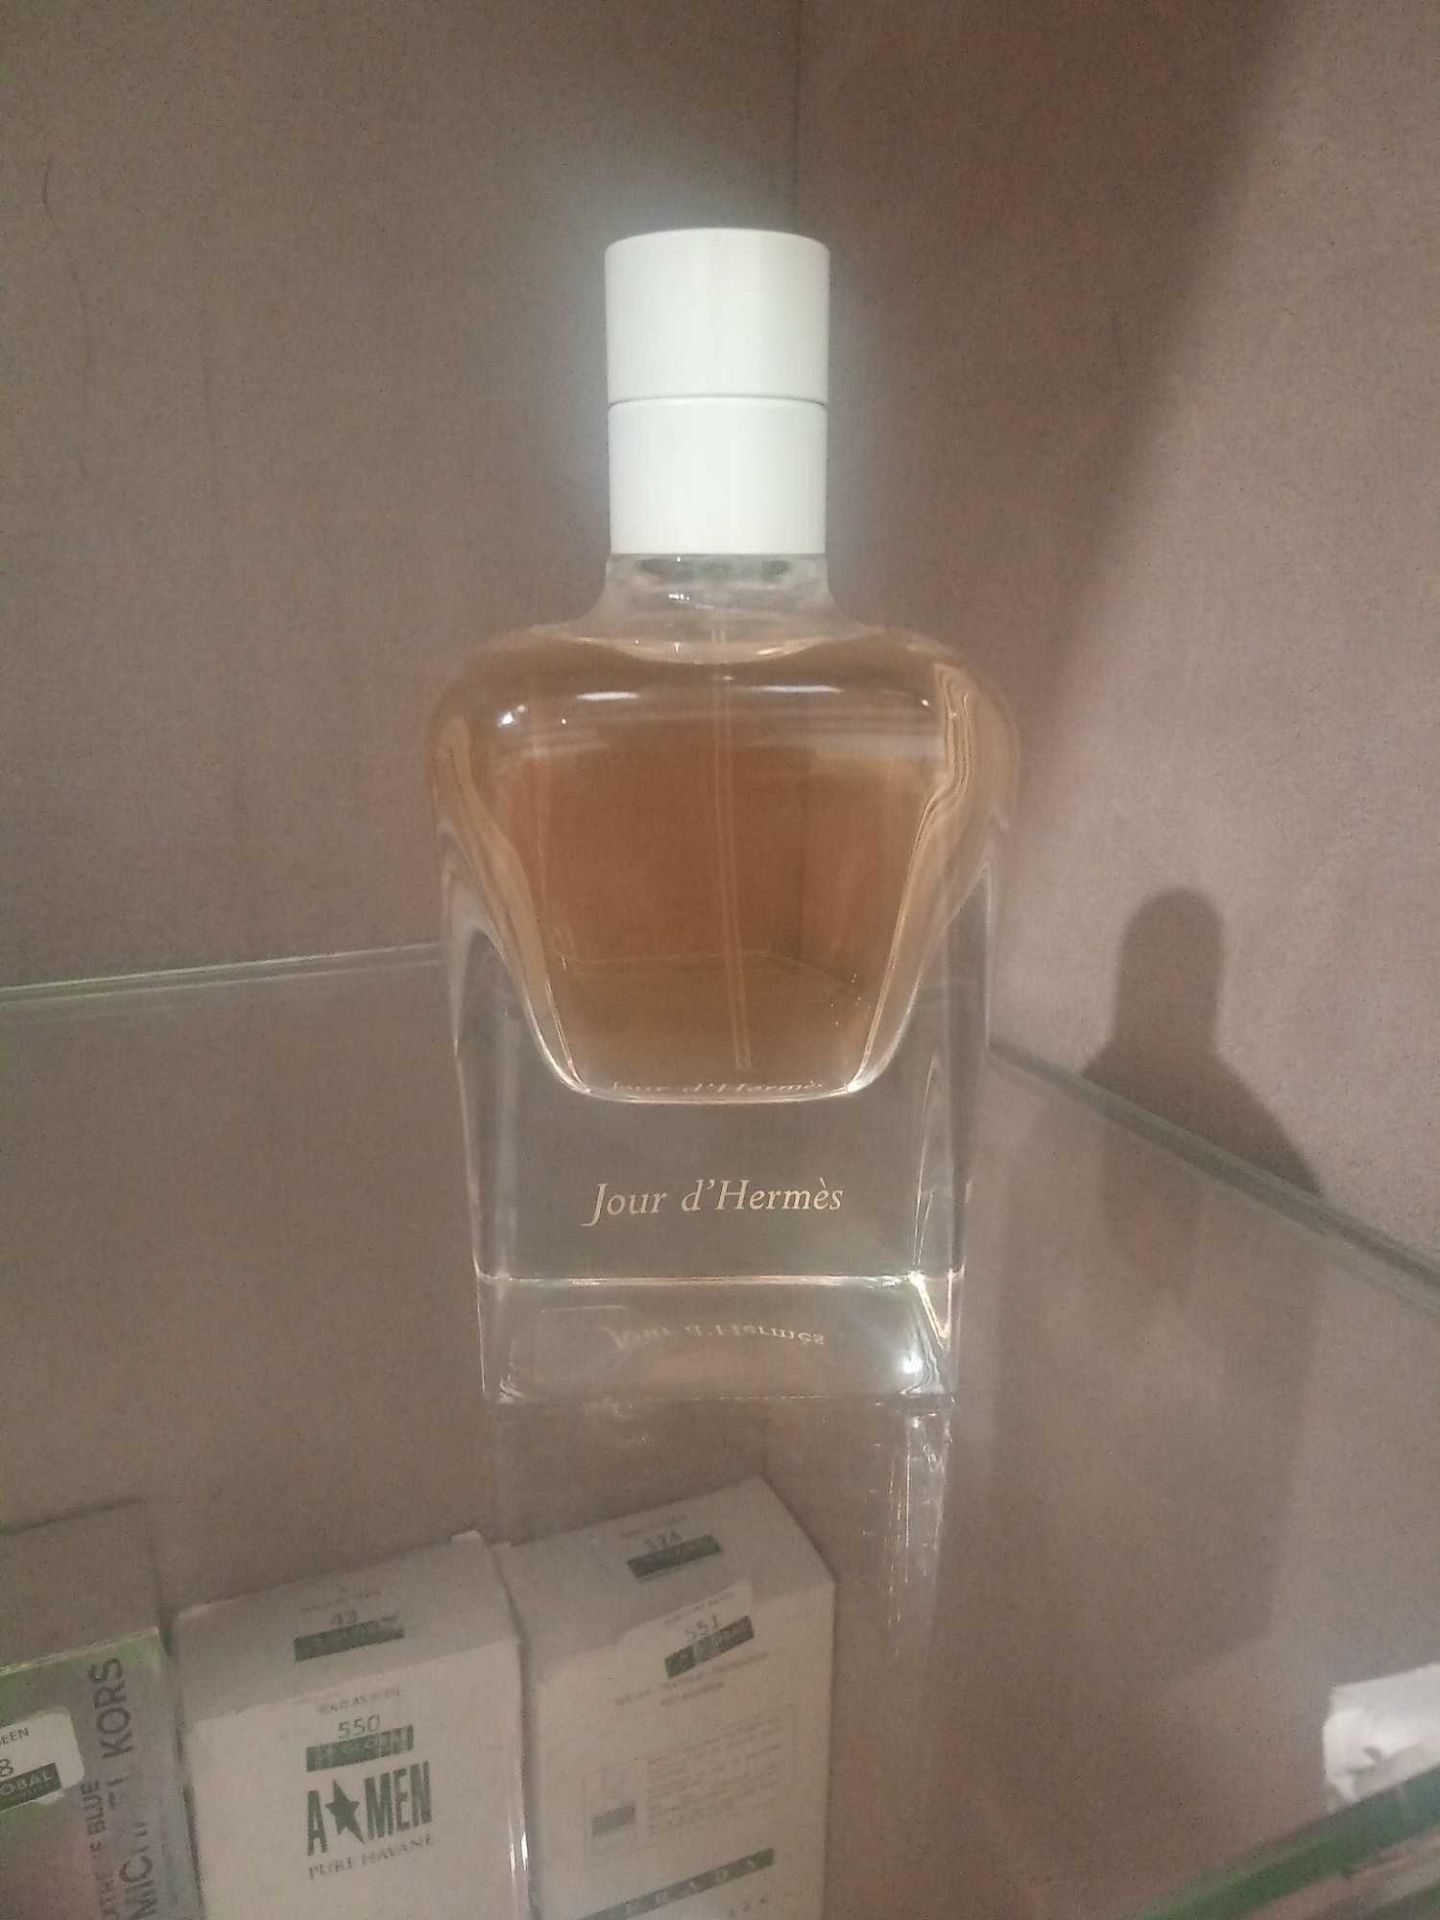 RRP £120 Unboxed Tester Bottle Of Jour D Hermes 85Ml Eau De Parfum